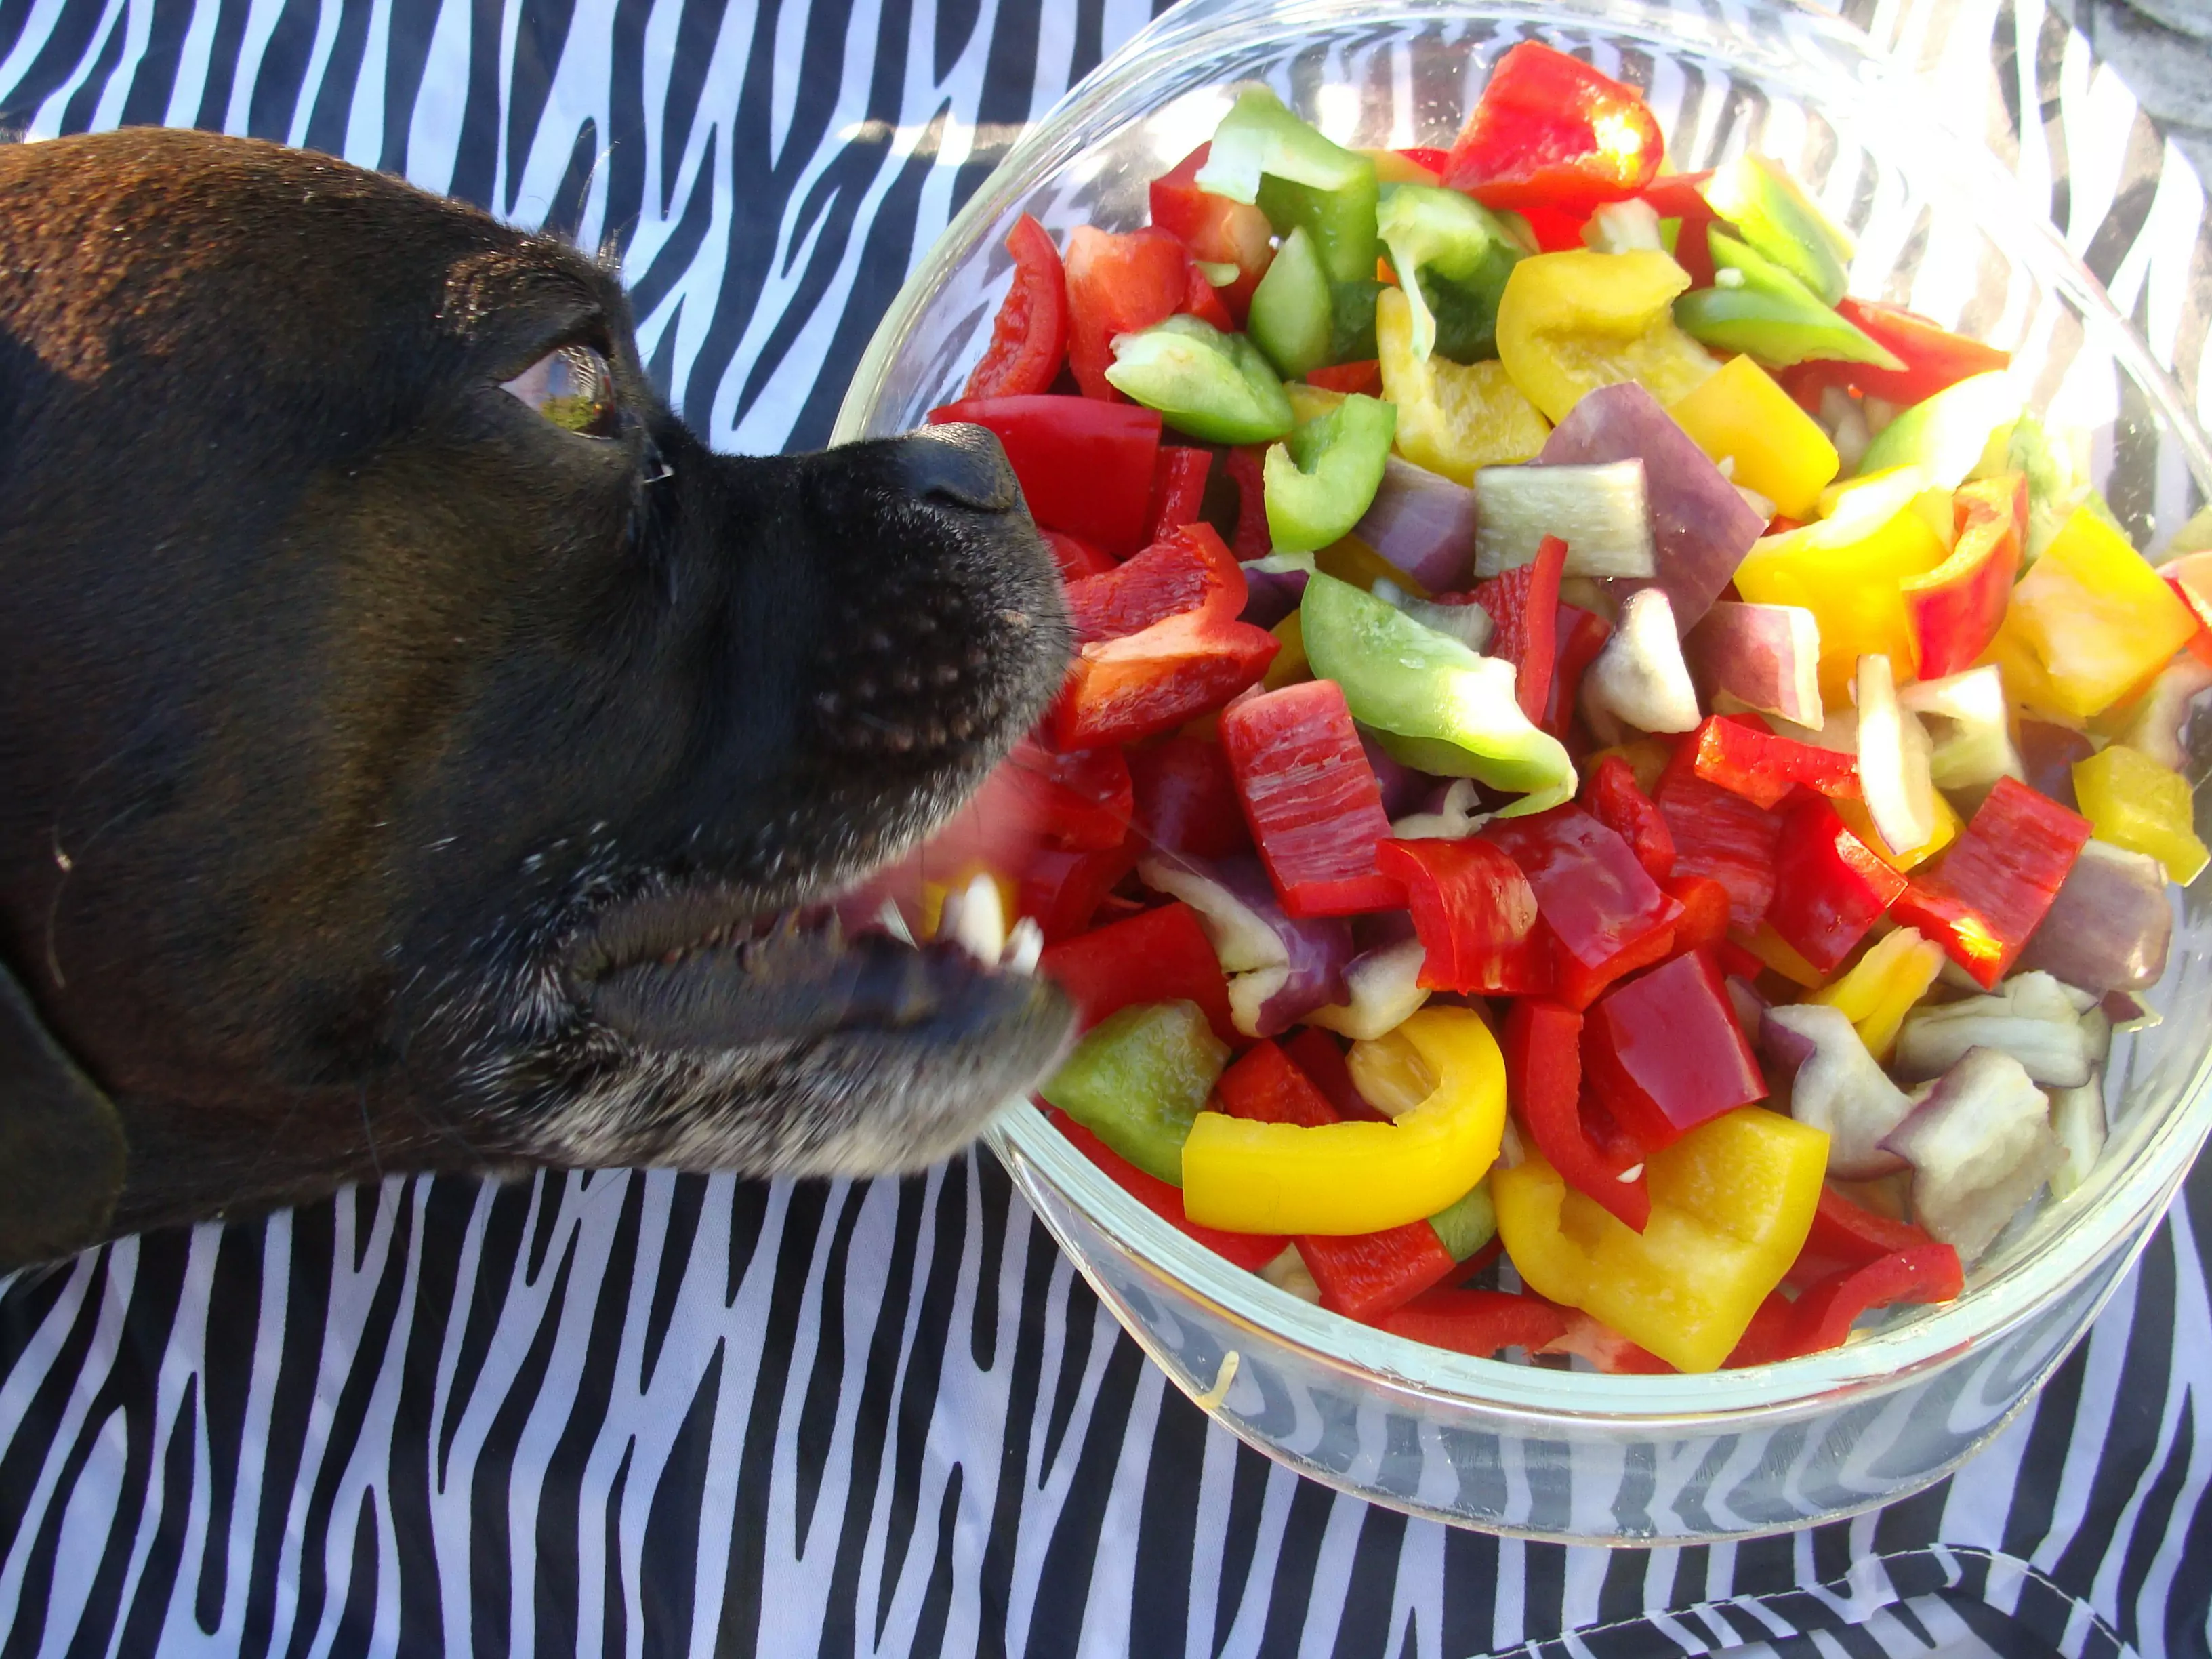 Os cães podem comer pimentas?